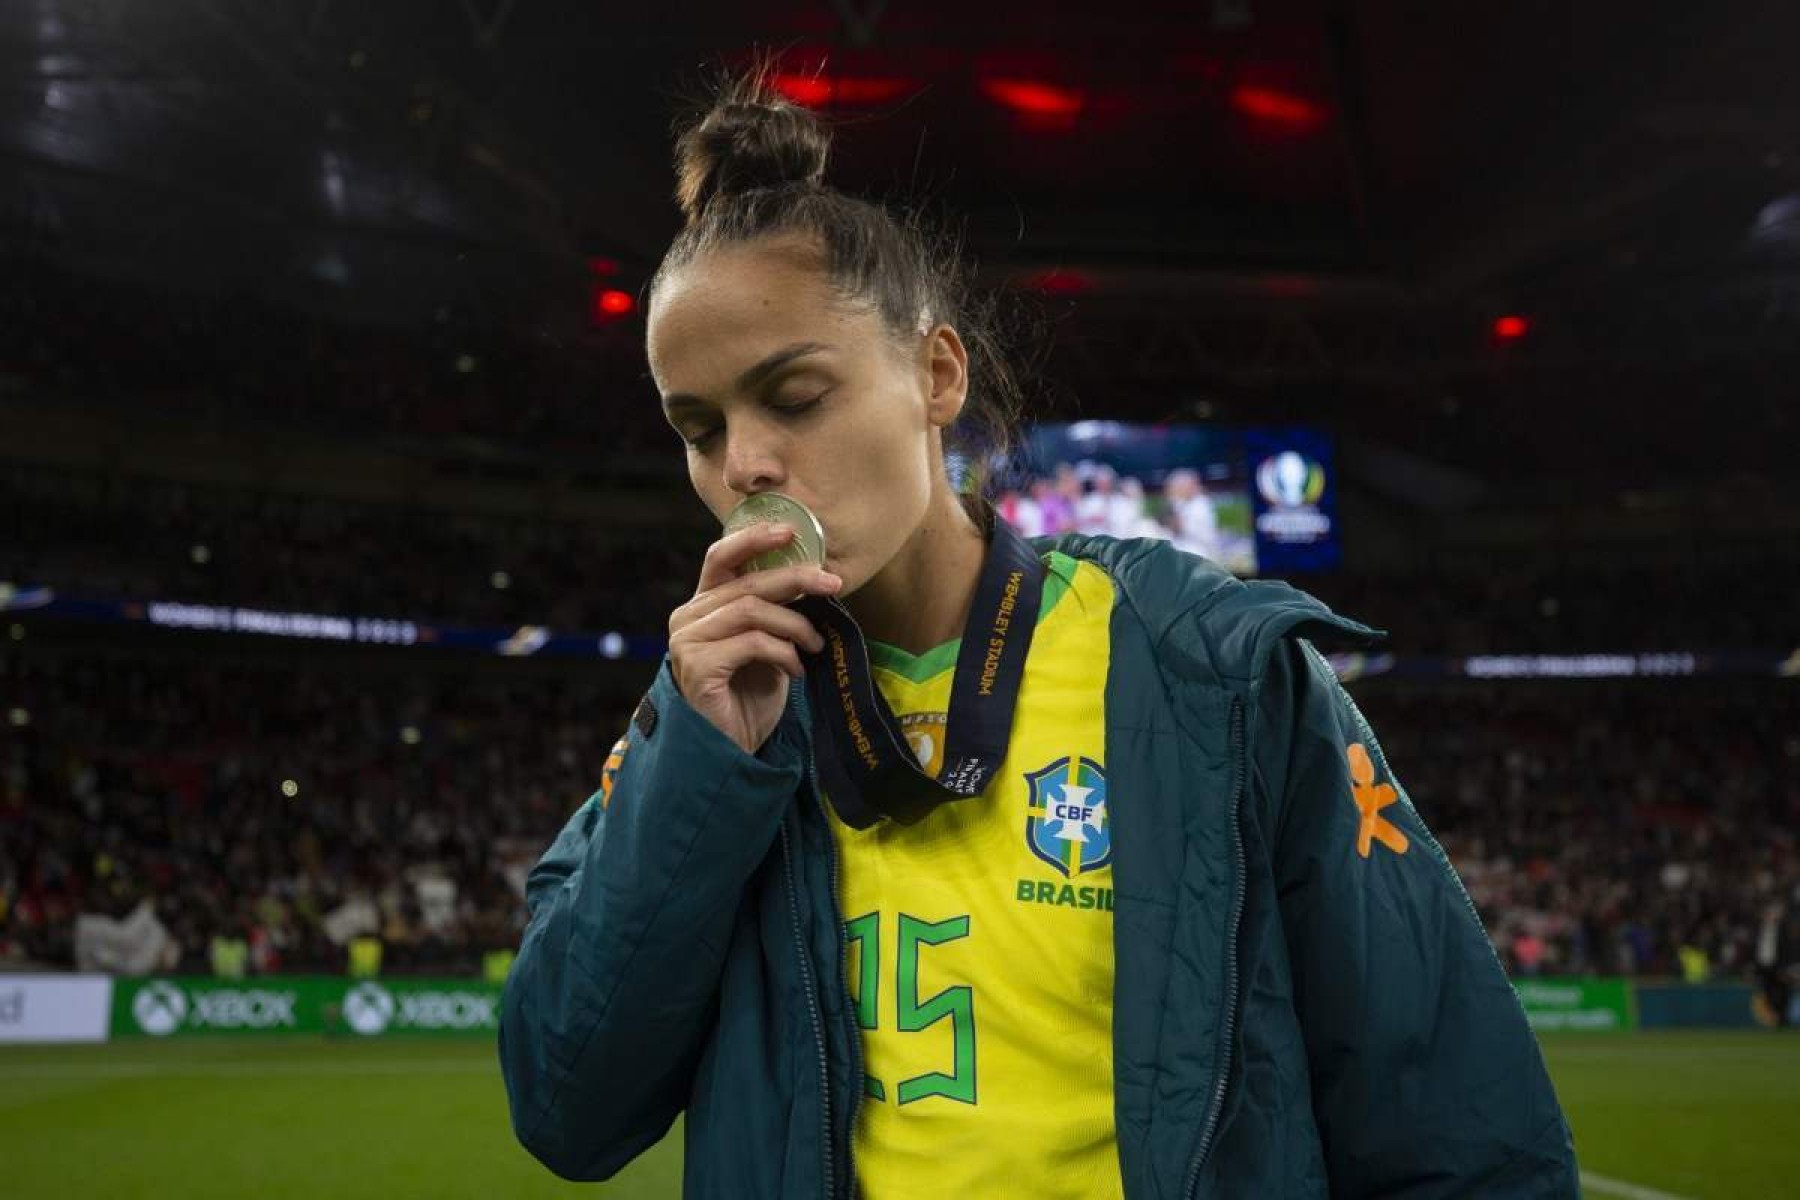 Jogadora brasiliense Gabi Portilho comemora primeira convocação olímpica